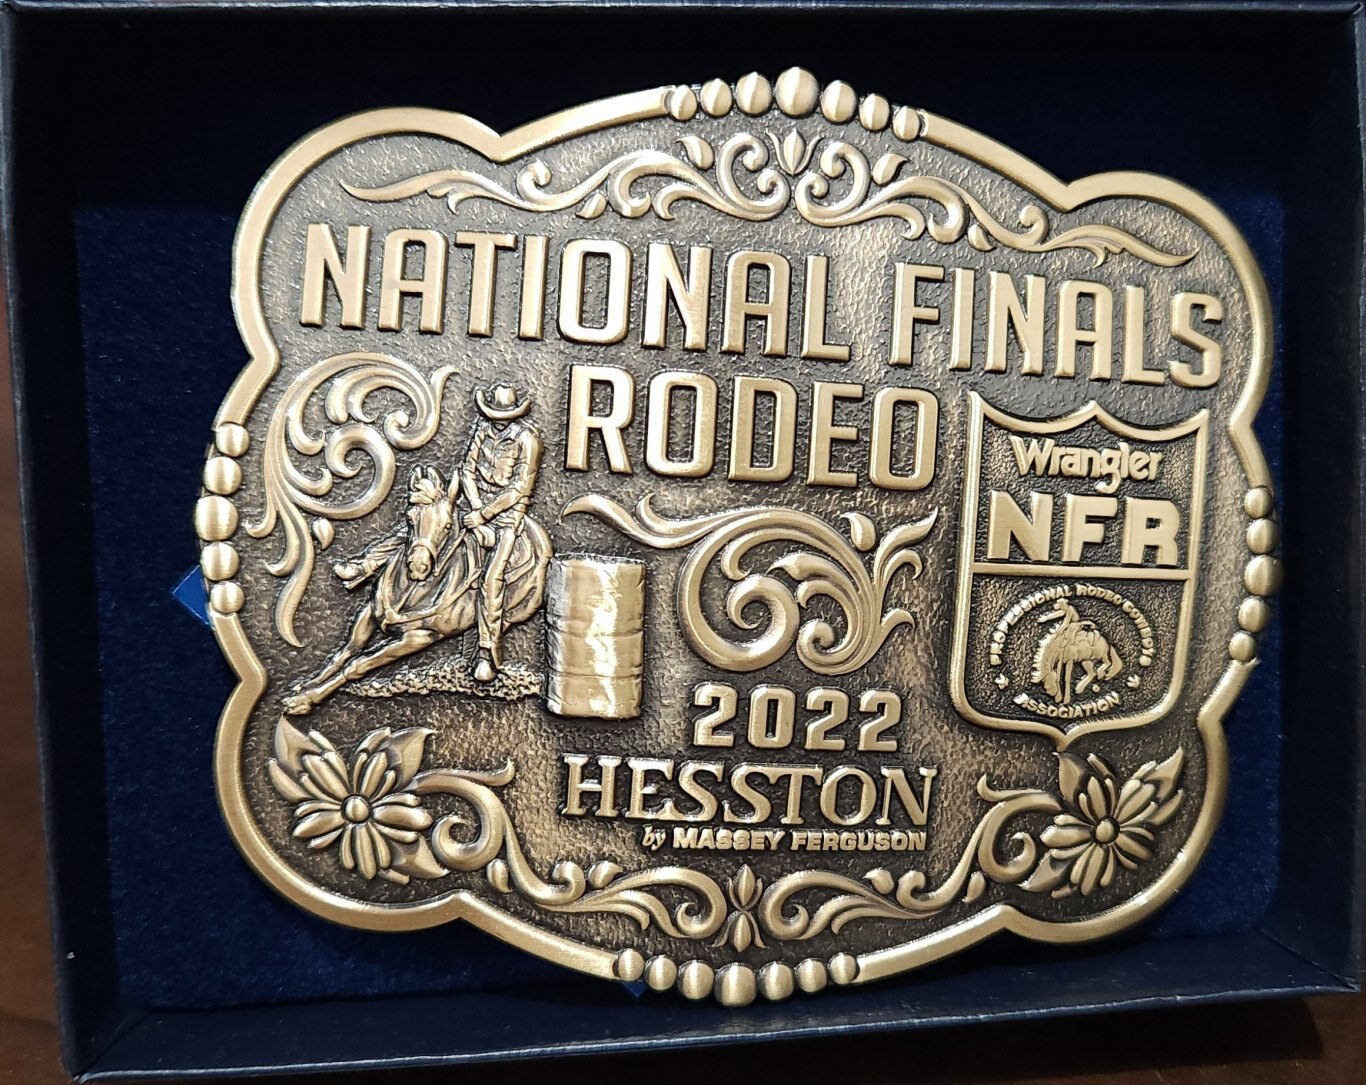 HESSTON NATIONAL FINALS RODEO BELT BUCKLES Bronze